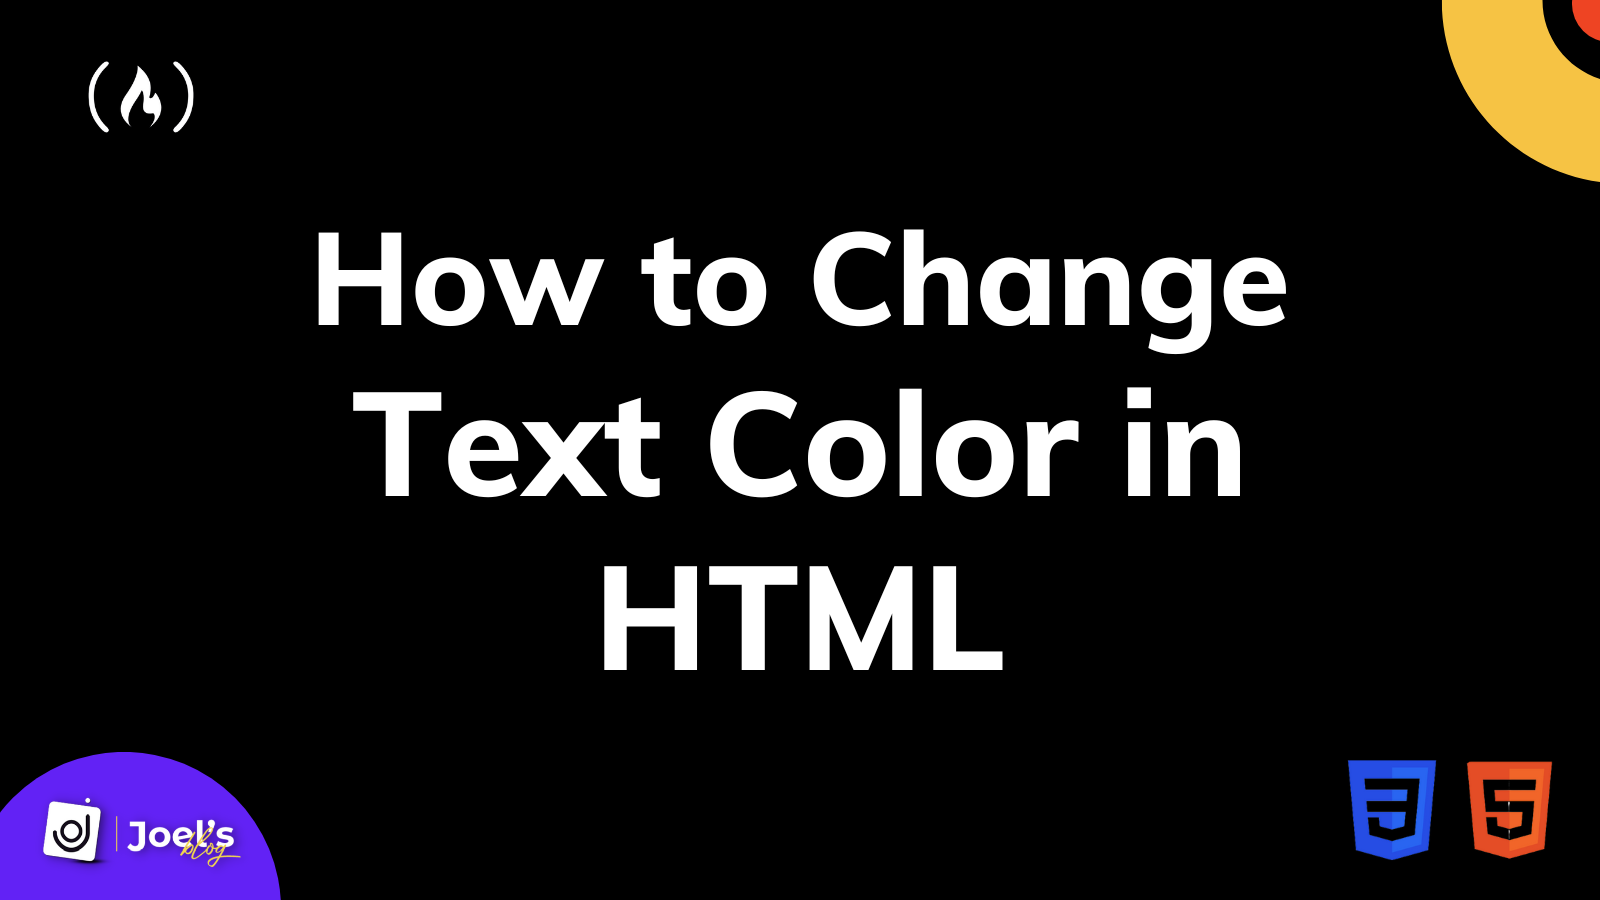 Thay đổi màu văn bản trong html là một cách hiệu quả để tạo điểm nhấn cho trang web của bạn. Hãy xem qua hình ảnh liên quan đến từ khóa này để tìm kiếm những cách thức và ý tưởng tuyệt vời để tạo ra những màu sắc đáng chú ý cho văn bản trên trang web của bạn.